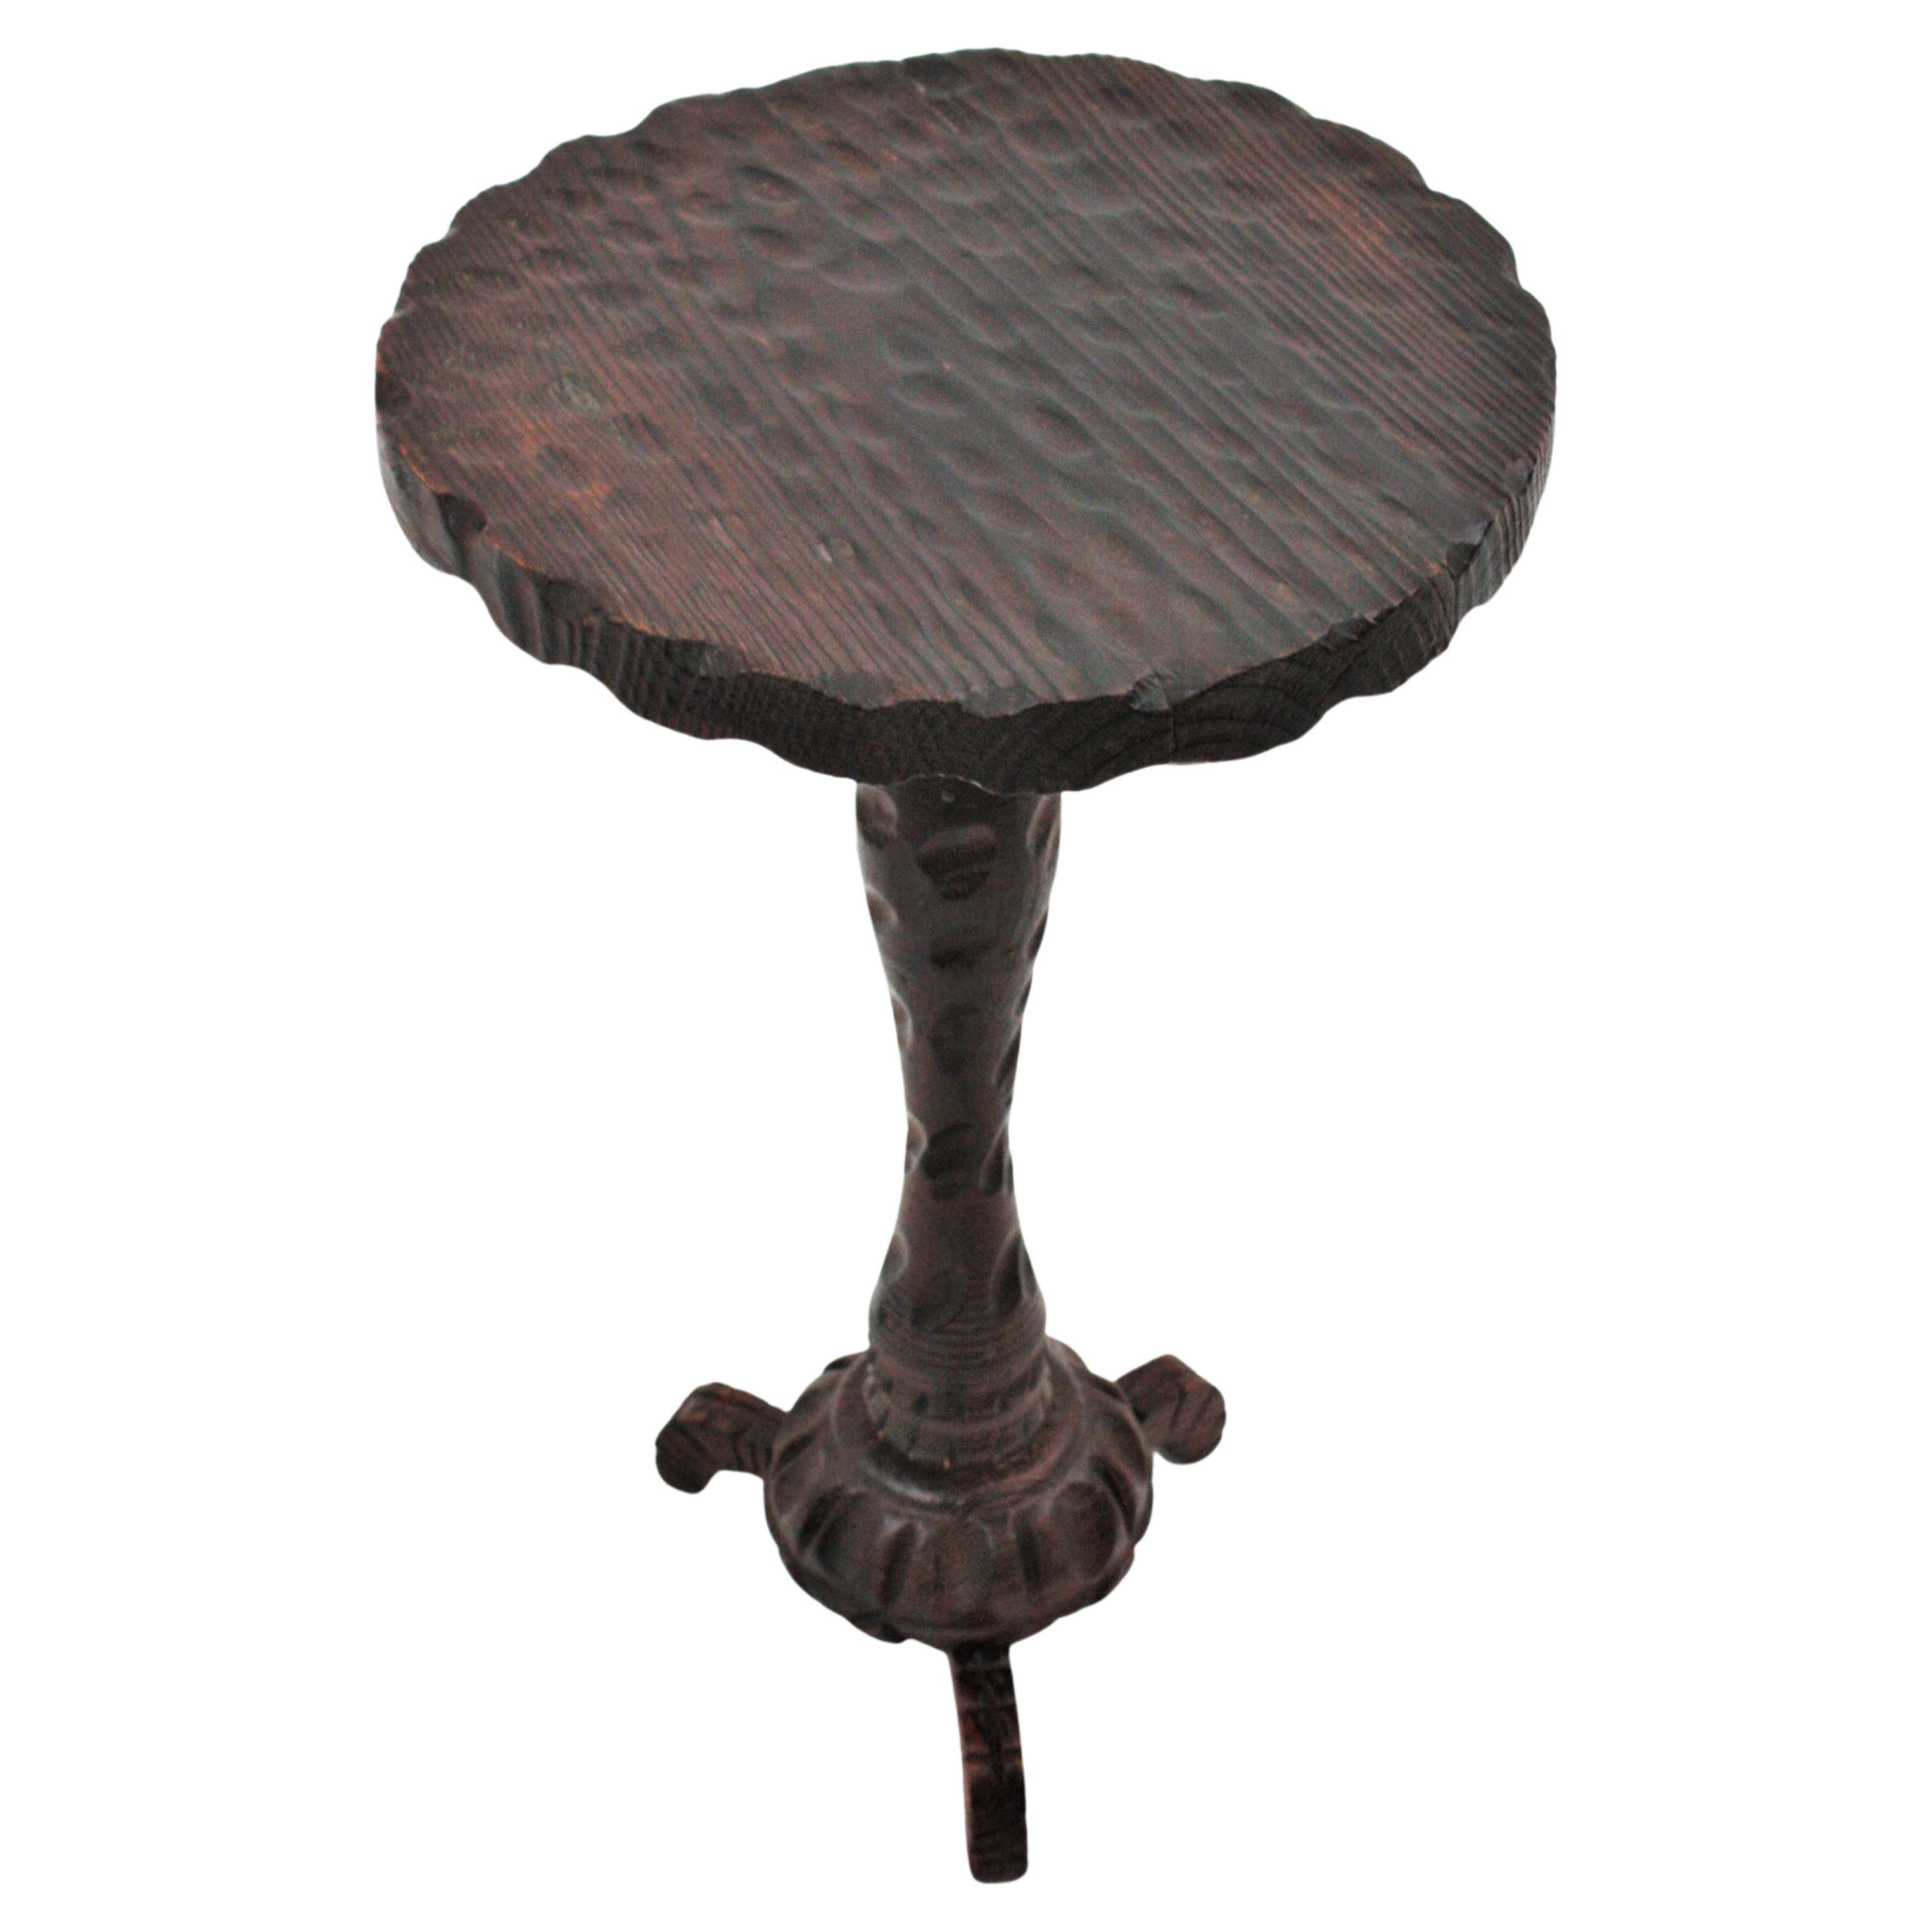 Handgeschnitzter Gueridon-Tisch oder Beistelltisch aus Kiefernholz auf einem Dreibeinfuß. Spanien, 1940er Jahre.
Die Tischplatte in runder Form hat eine Wellenform am Rand und schöne Schnitzereien. Er steht auf einem Holzstiel mit geschwungenen